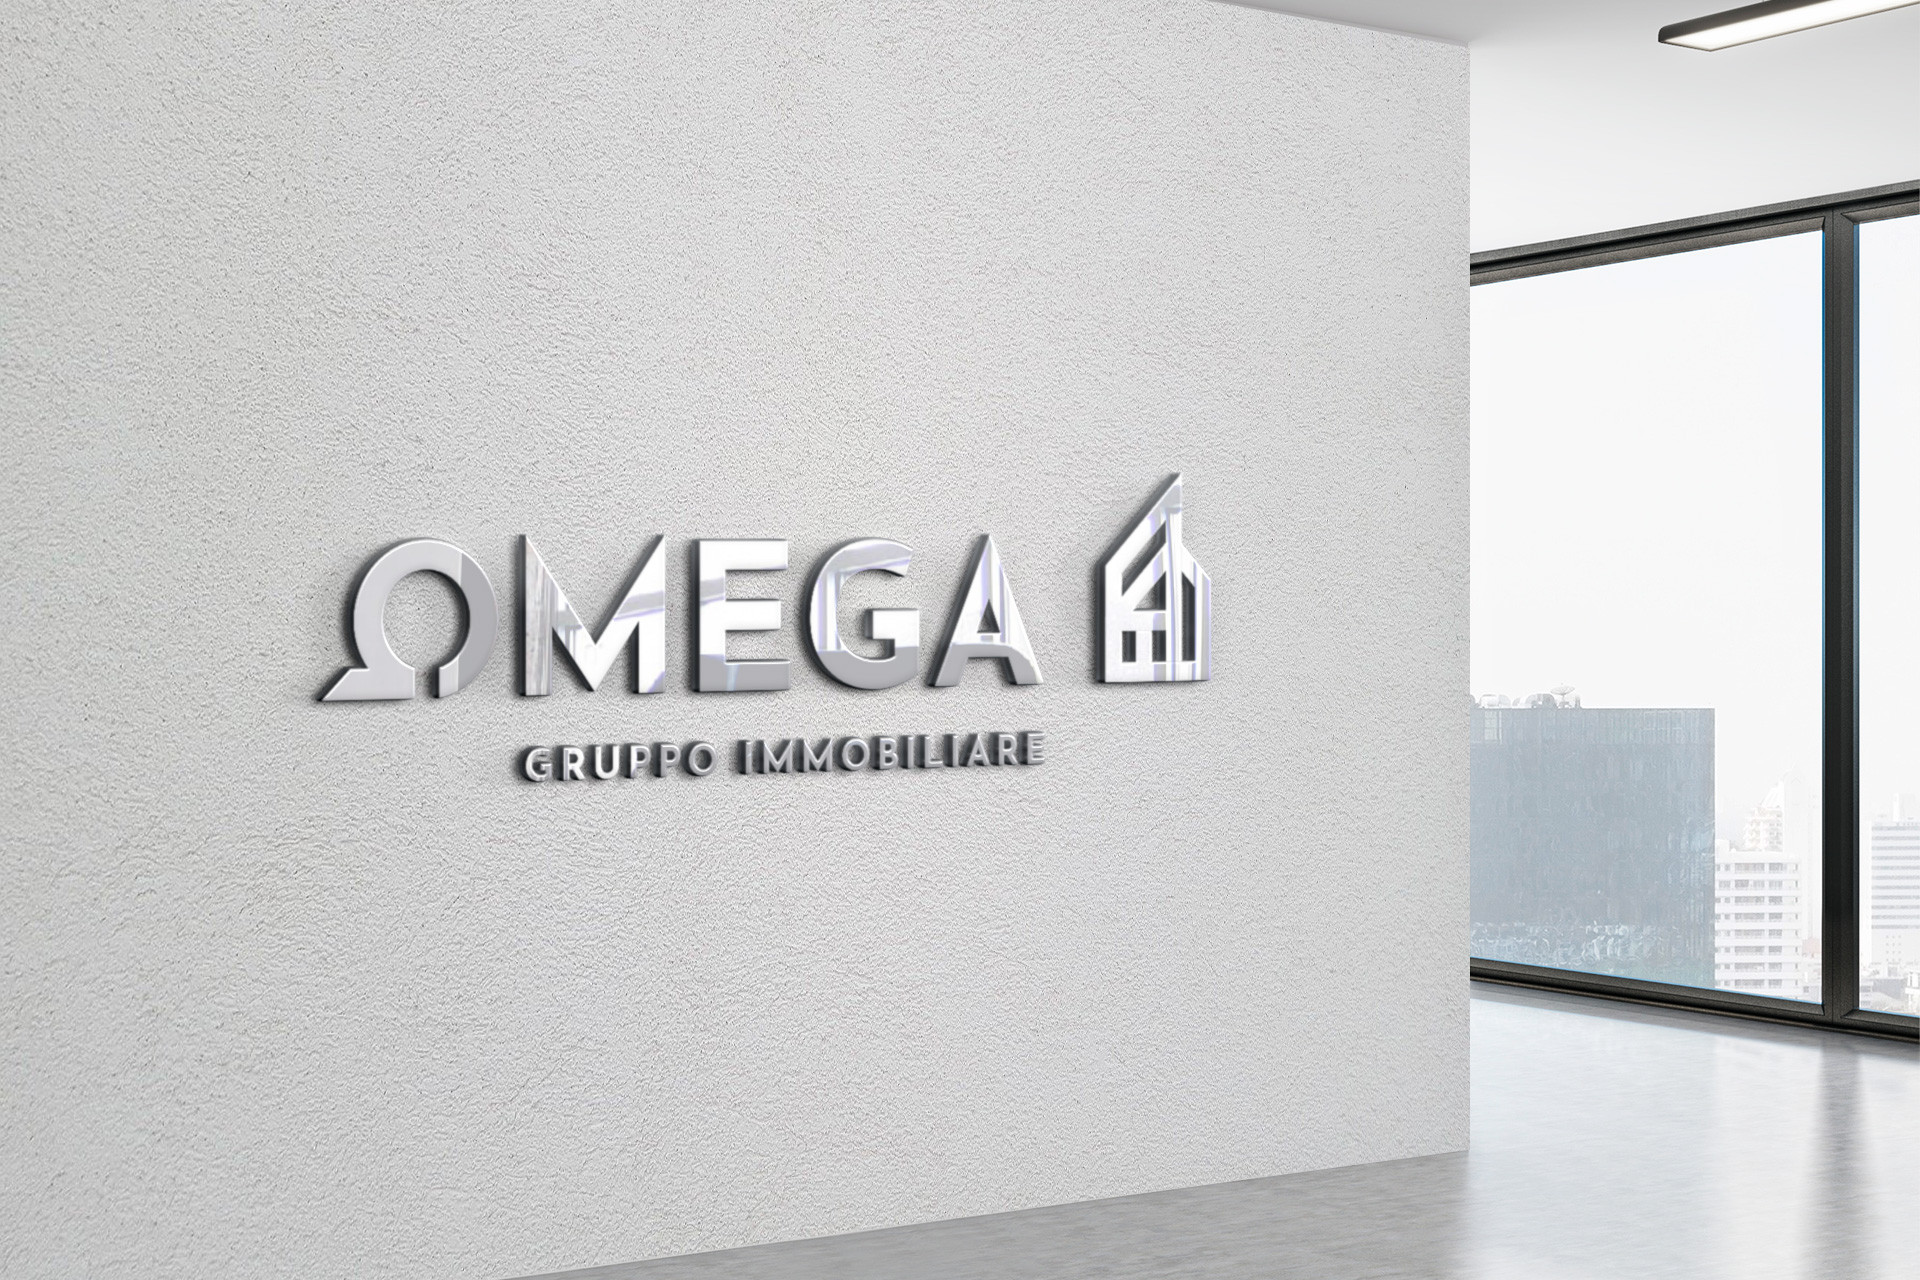 Omega Gruppo immobiliare brand identity